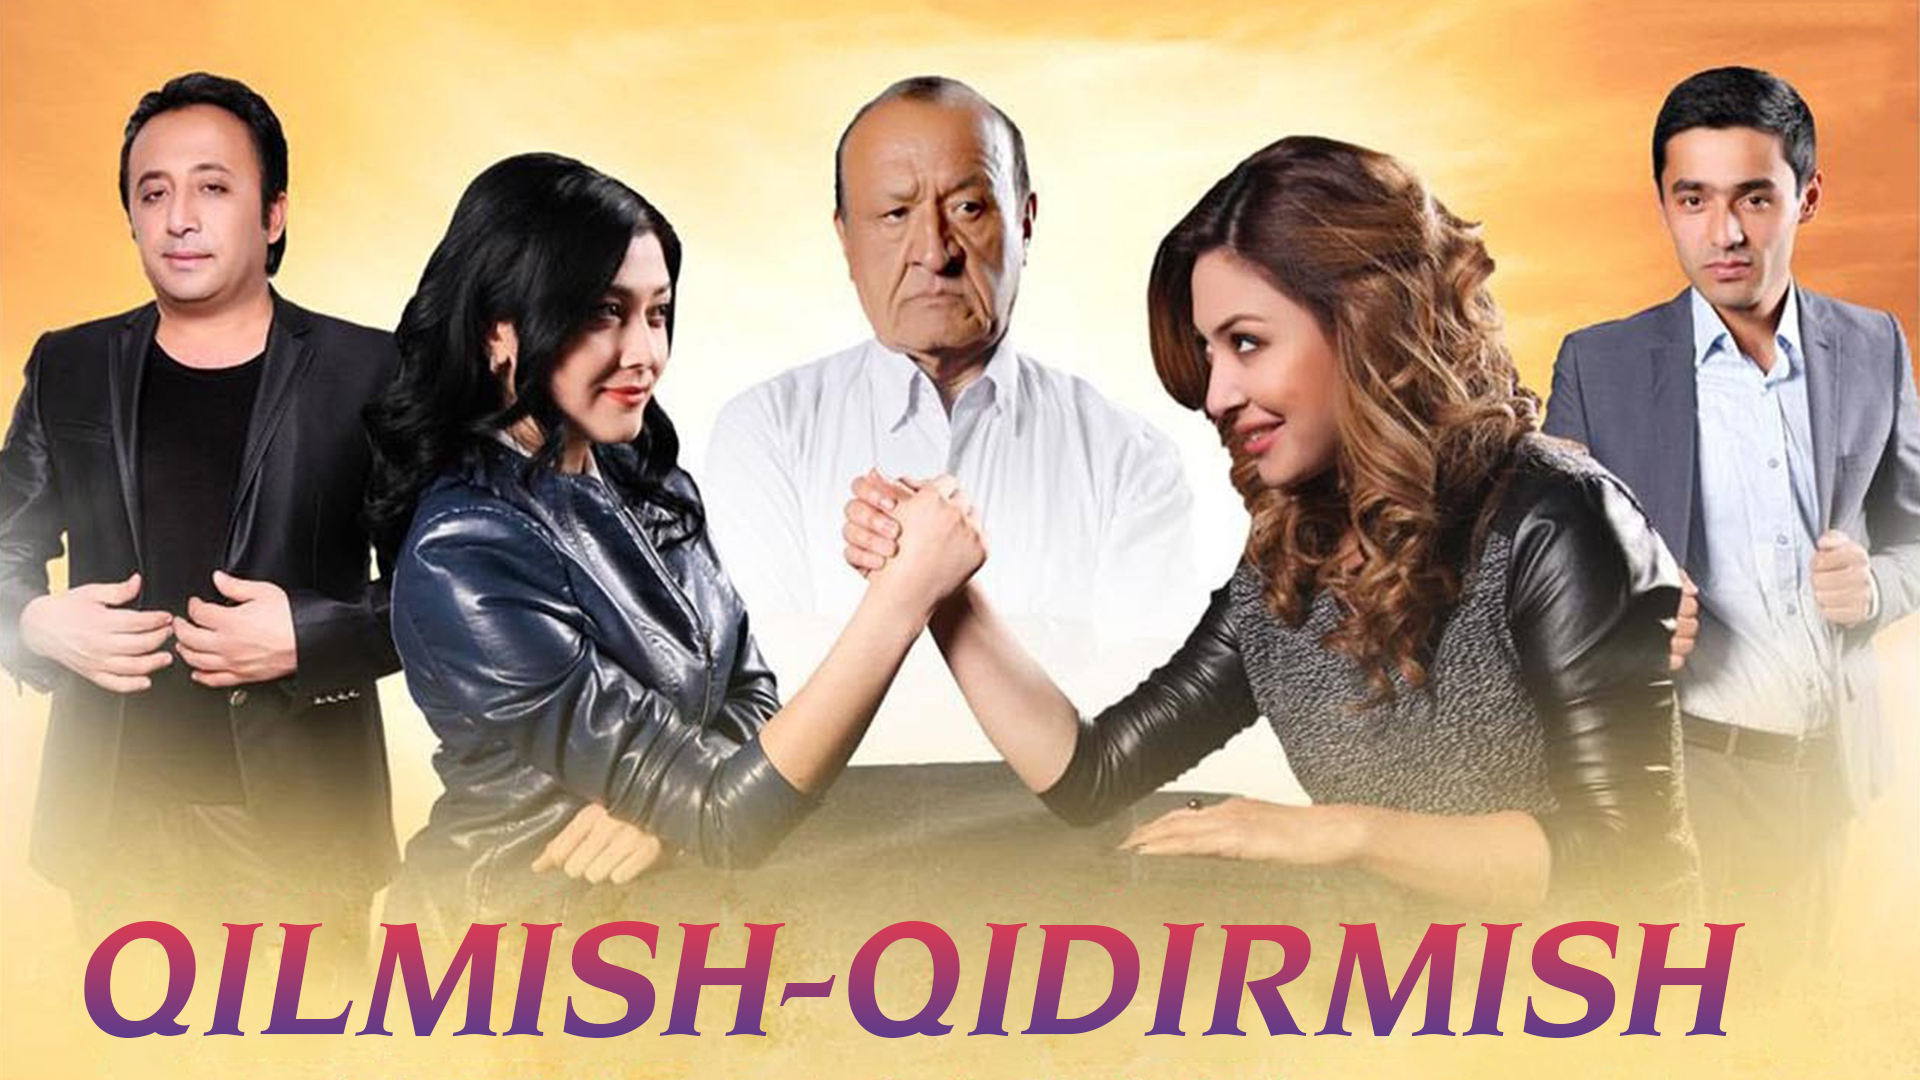 Qilmish-qidirmish